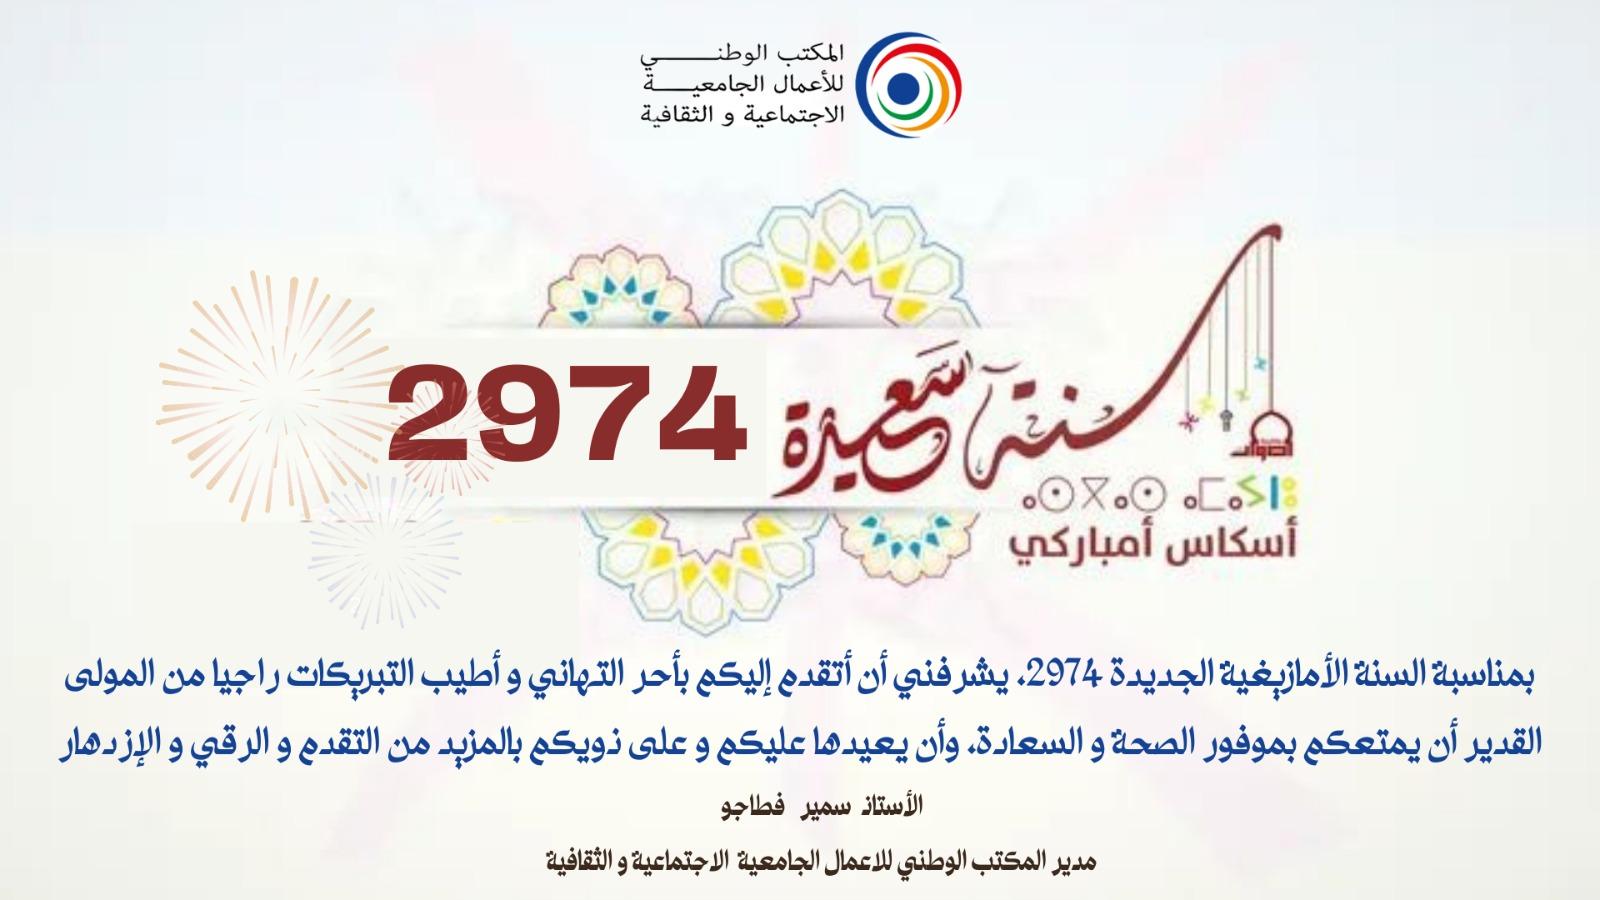 L'Office National des Œuvres Universitaires Sociales et Culturelles vous félicite à l'occasion de la nouvelle année 2974.